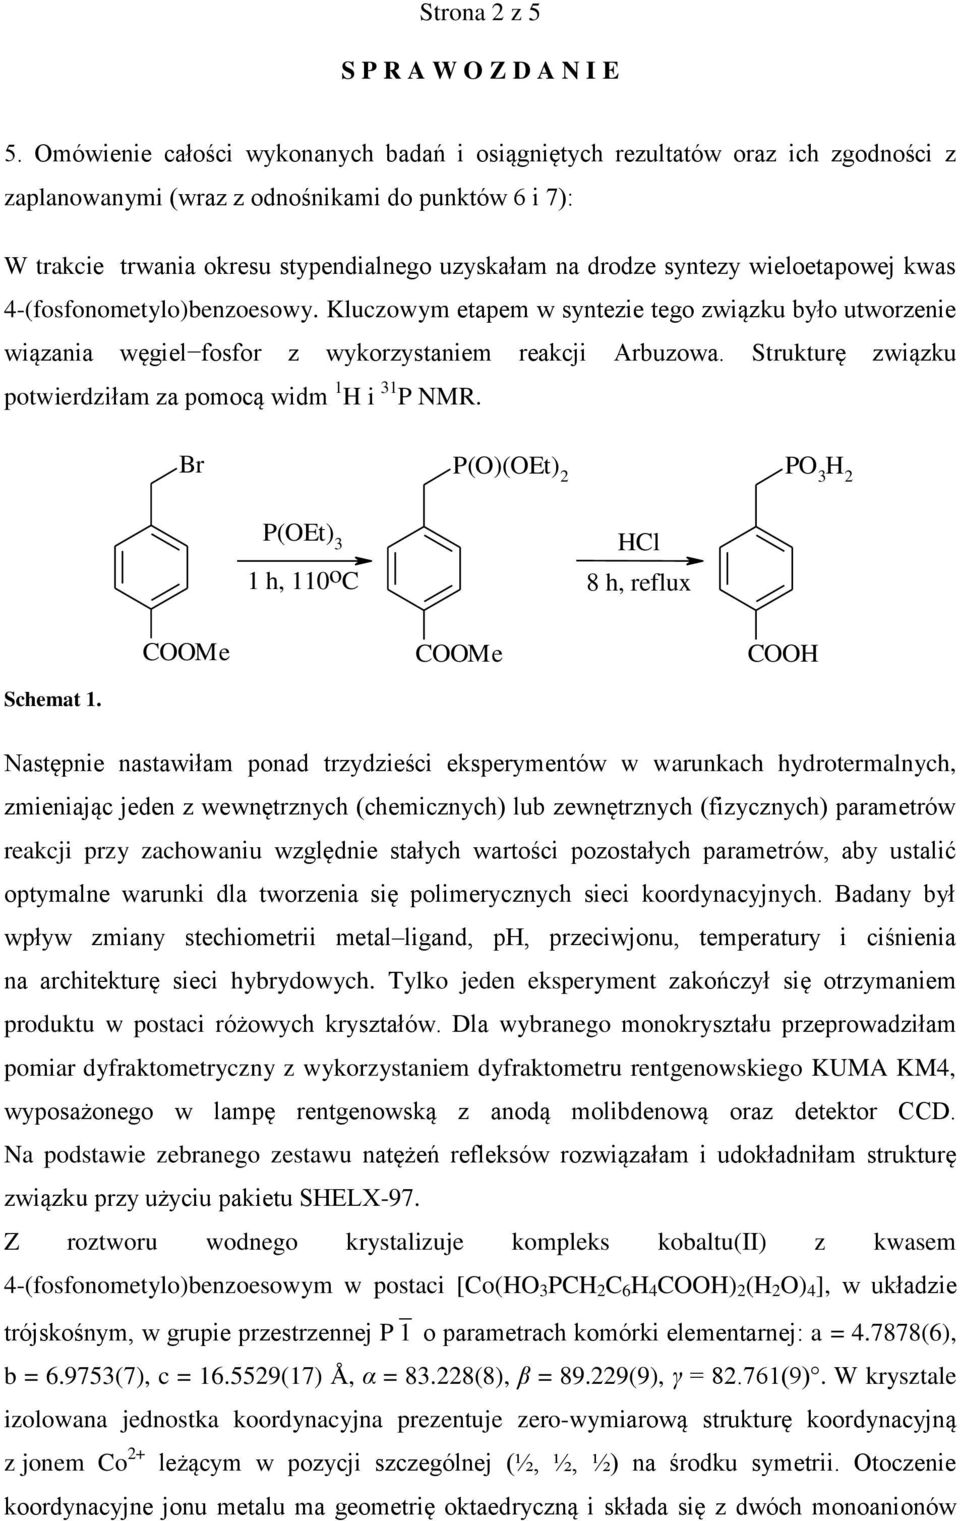 syntezy wieloetapowej kwas 4-(fosfonometylo)benzoesowy. Kluczowym etapem w syntezie tego związku było utworzenie wiązania węgiel fosfor z wykorzystaniem reakcji Arbuzowa.